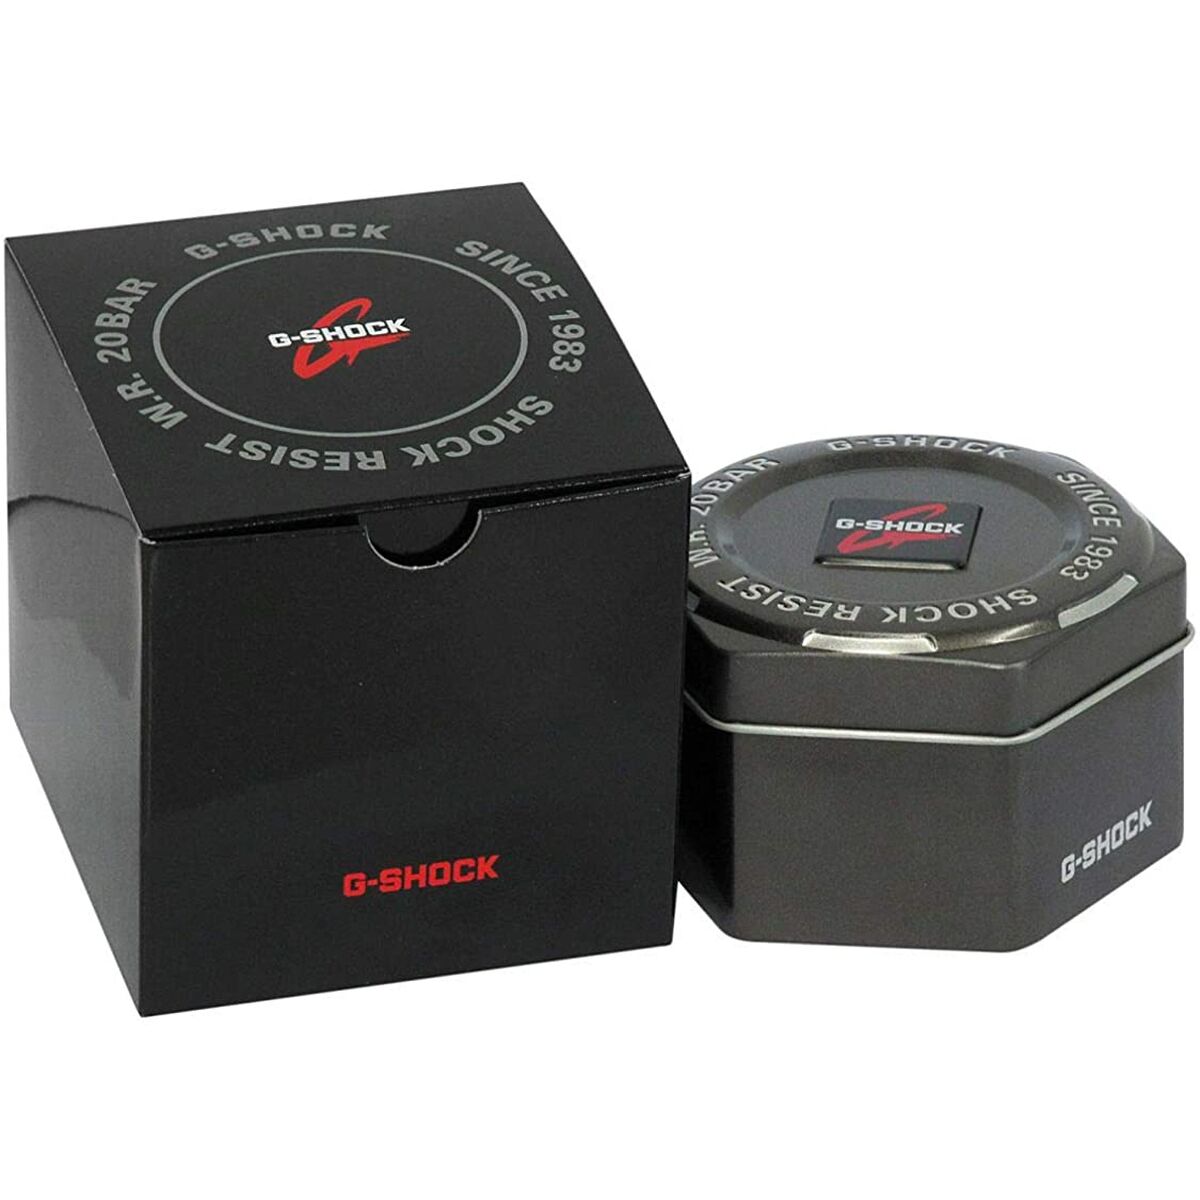 Kaufe Casio GA-2100-4AER Unisex-Uhr in Rot mit Multifunktion bei AWK Flagship um € 101.00